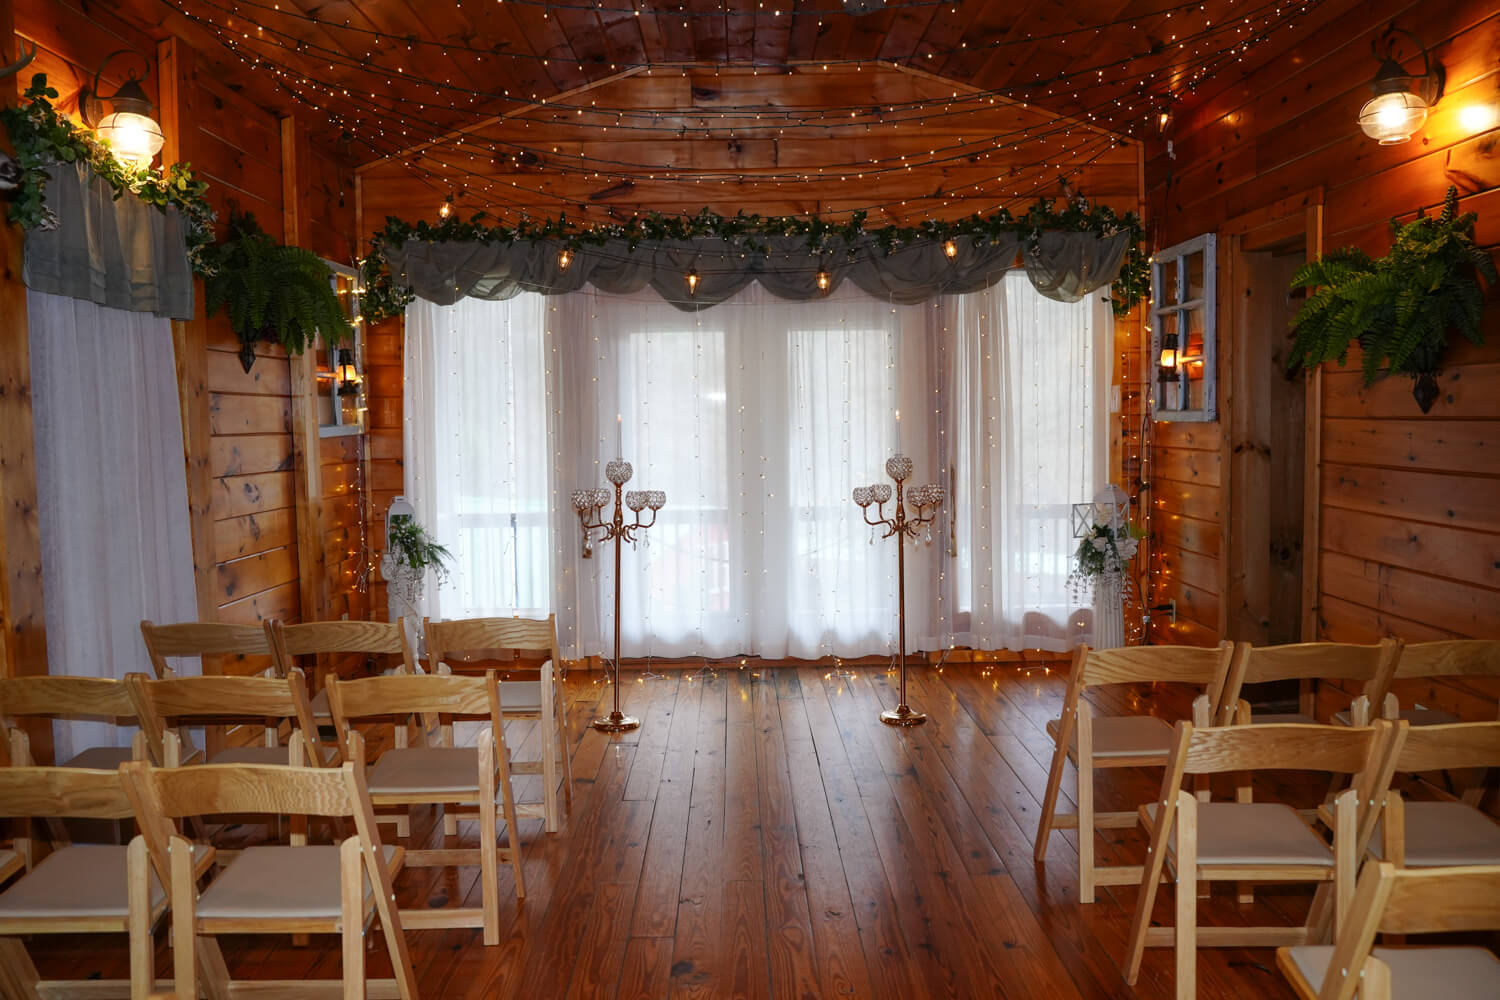 Honeysuckle Hills wedding chapel with candelabras